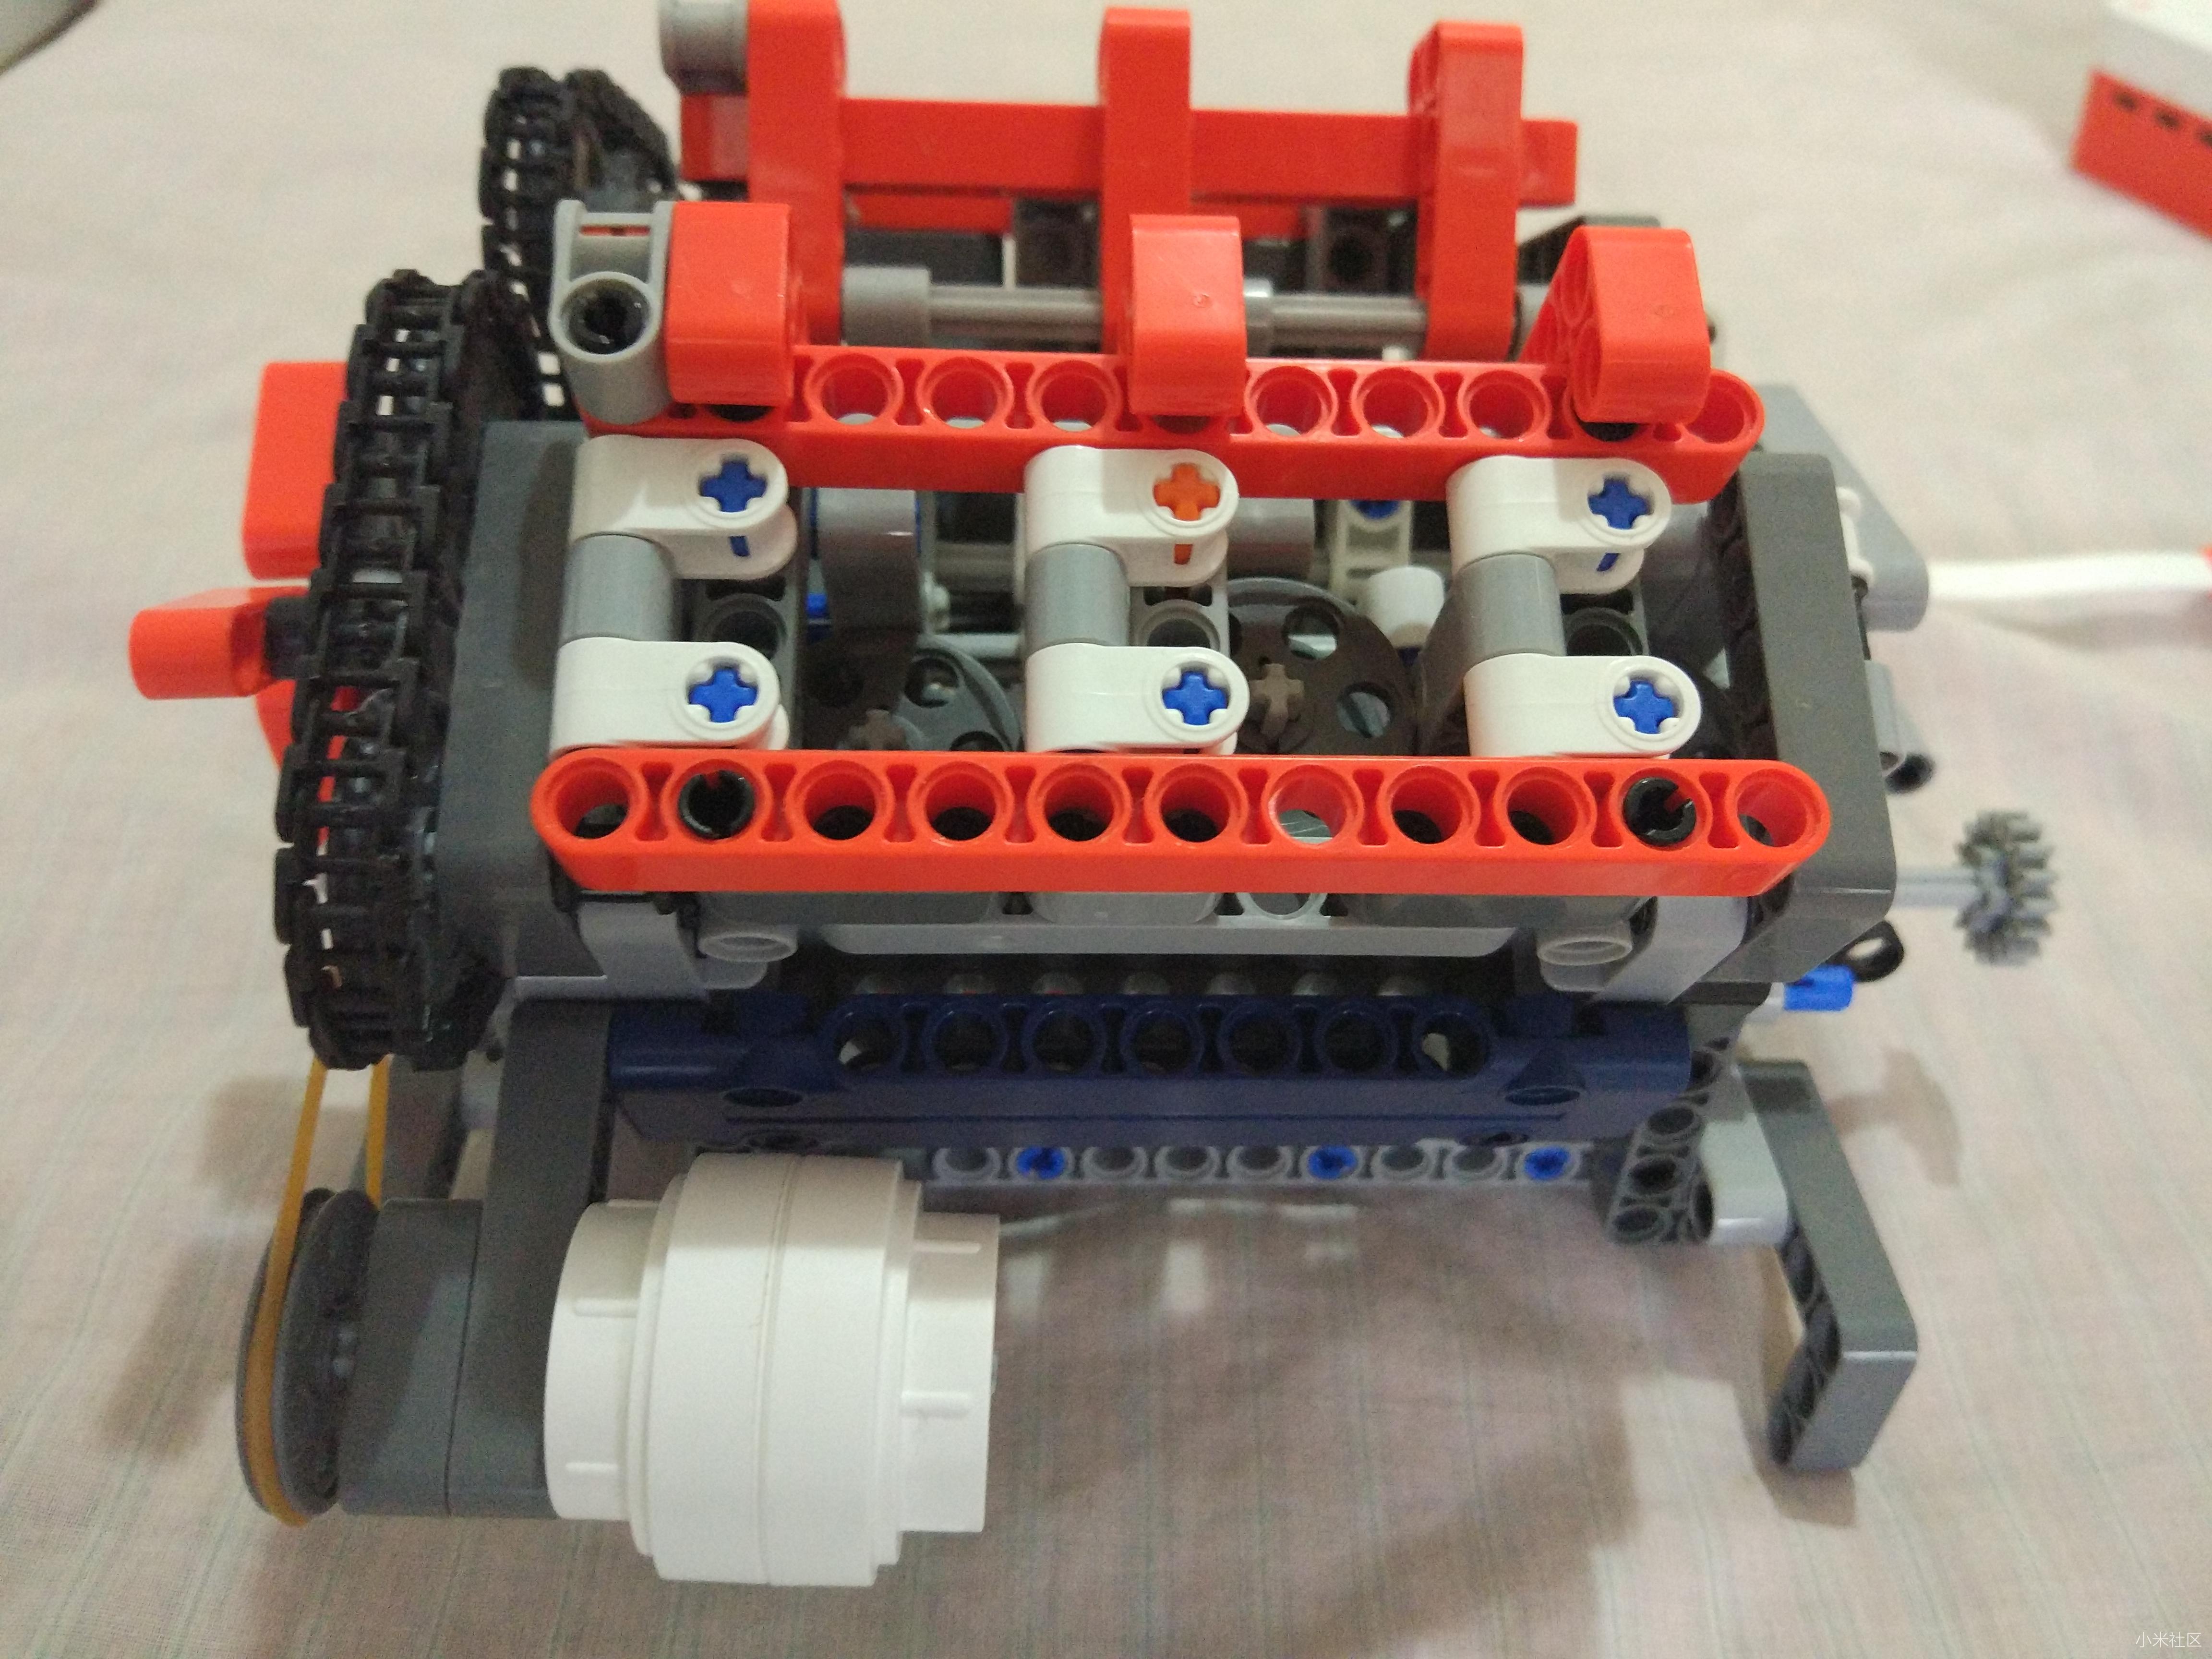 图片:动态:静态:v6发动机模型,双顶置凸轮轴,是用米兔电机驱动的,只能